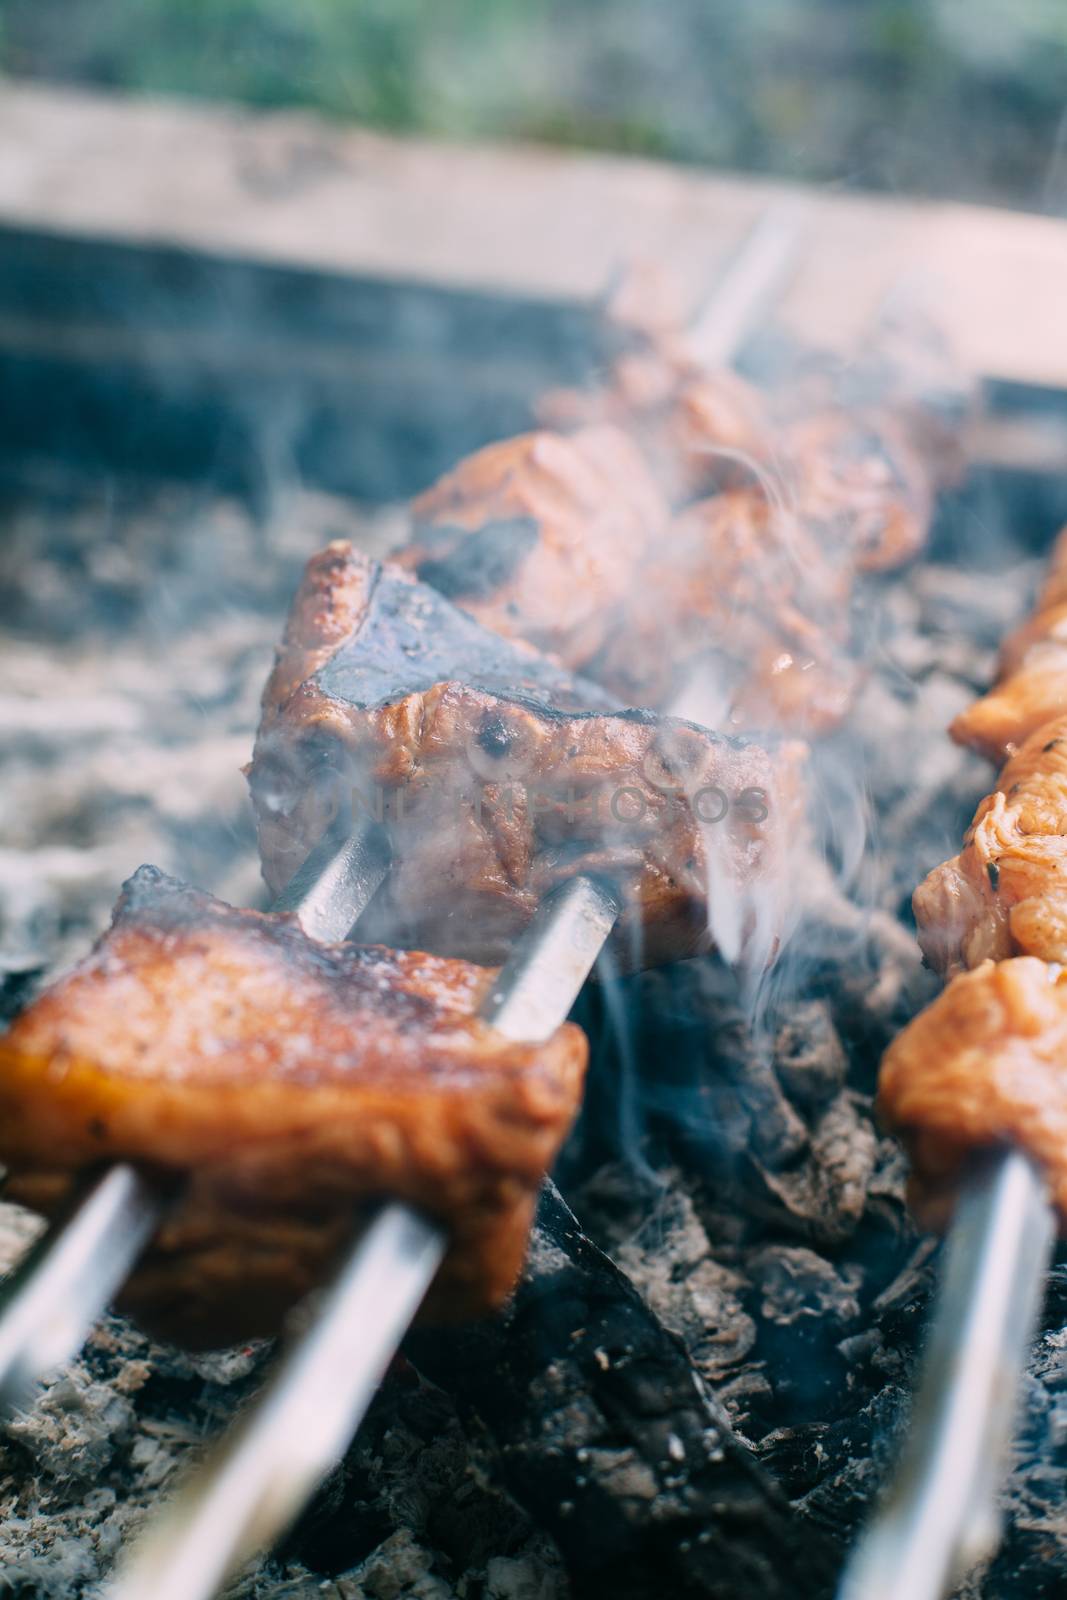 Skewers of pork ribs on a skewer in smoke. Cooking meat in nature.